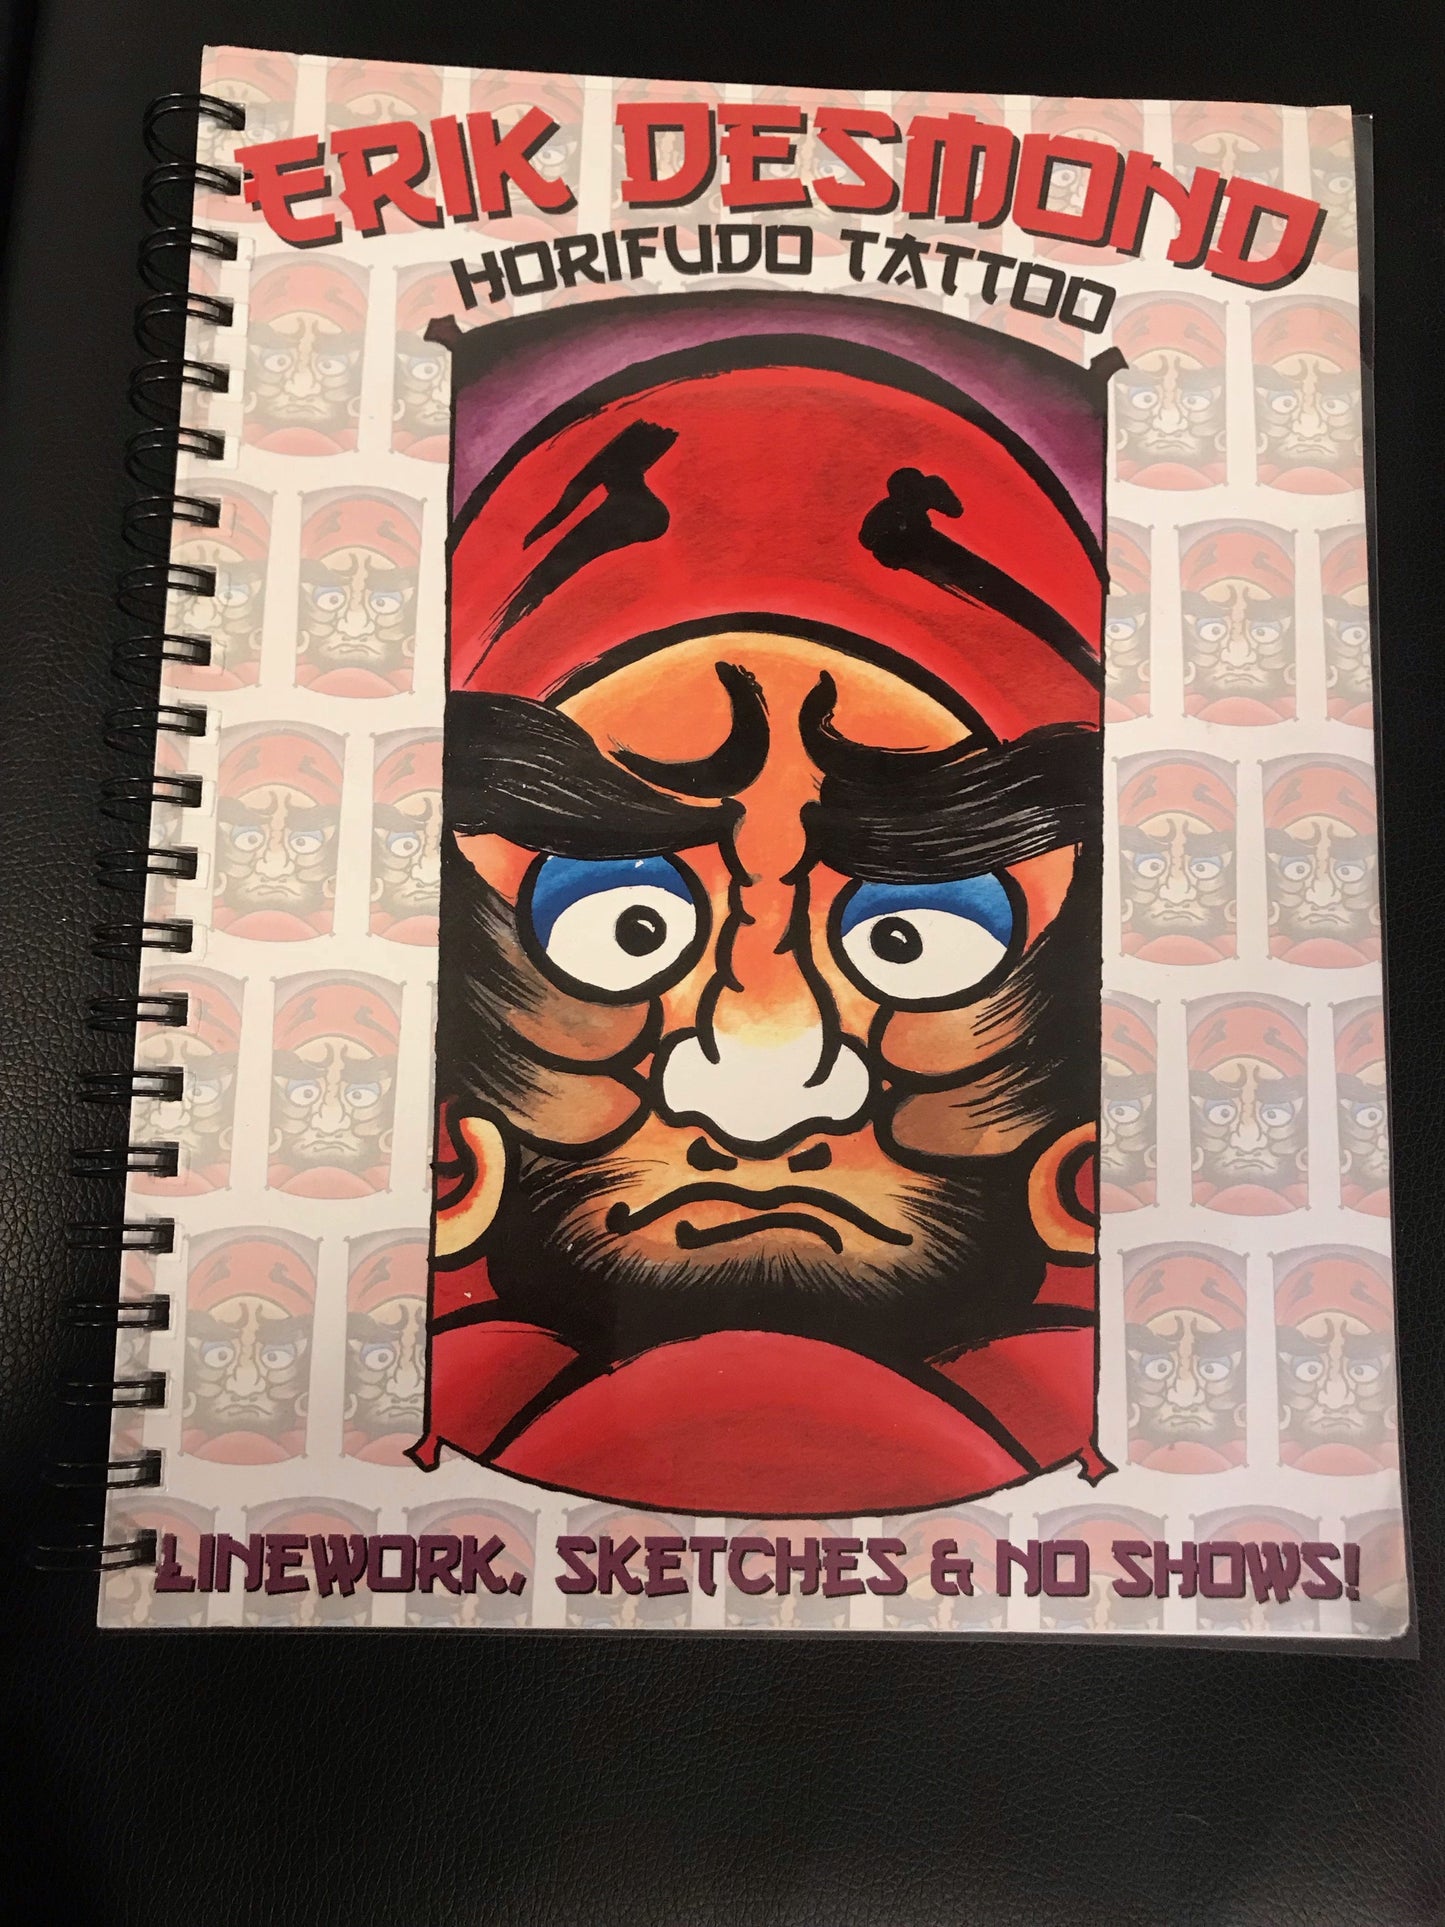 Erik Desmond Horifudo Tattoo - Linework, Sketches and No Shows.